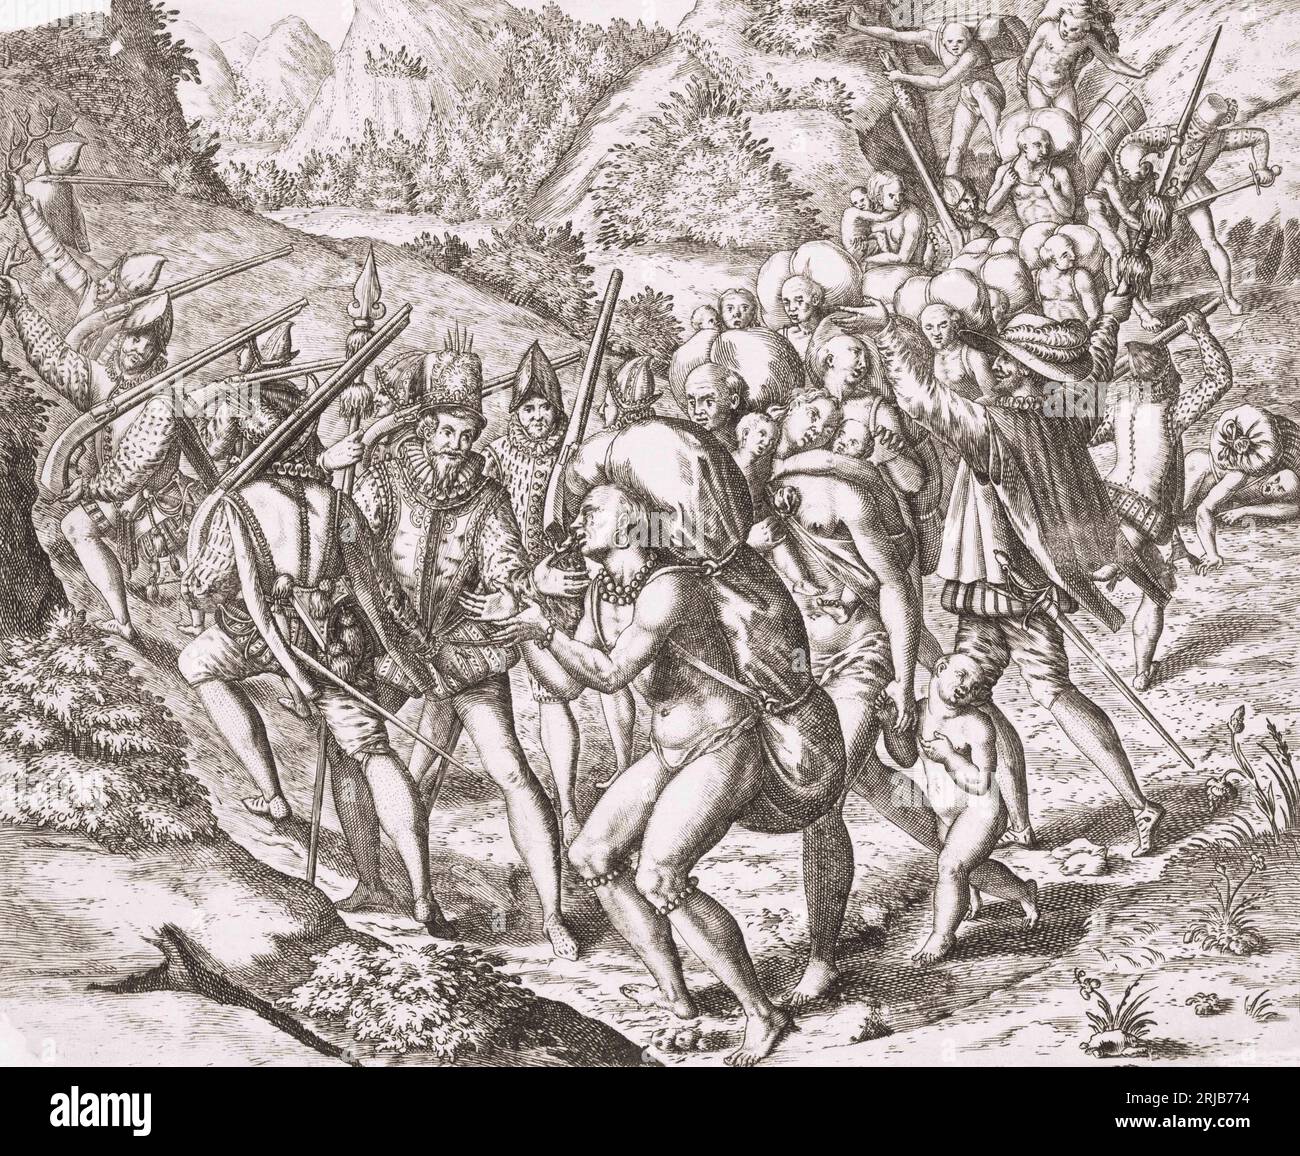 Les indigènes sud-américains capturés par les Espagnols sont poussés en captivité. Après une œuvre de Theodor de Bry à la fin du 16e siècle. Banque D'Images